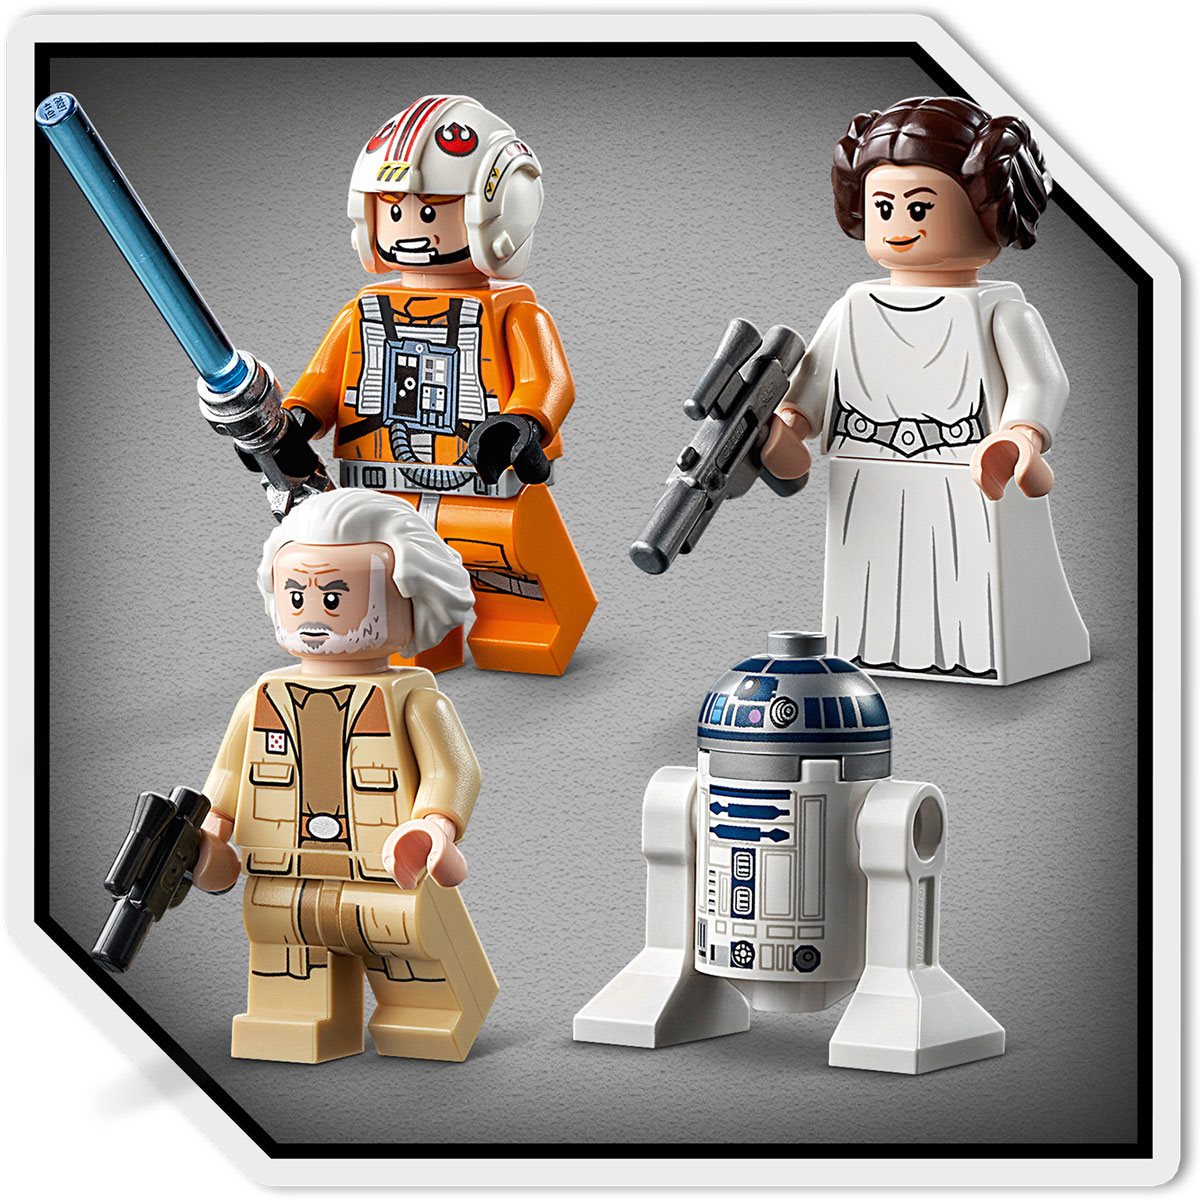 Lego Star Wars Luke Skywalkers X-Wing Fighter™ - 75301 Multi